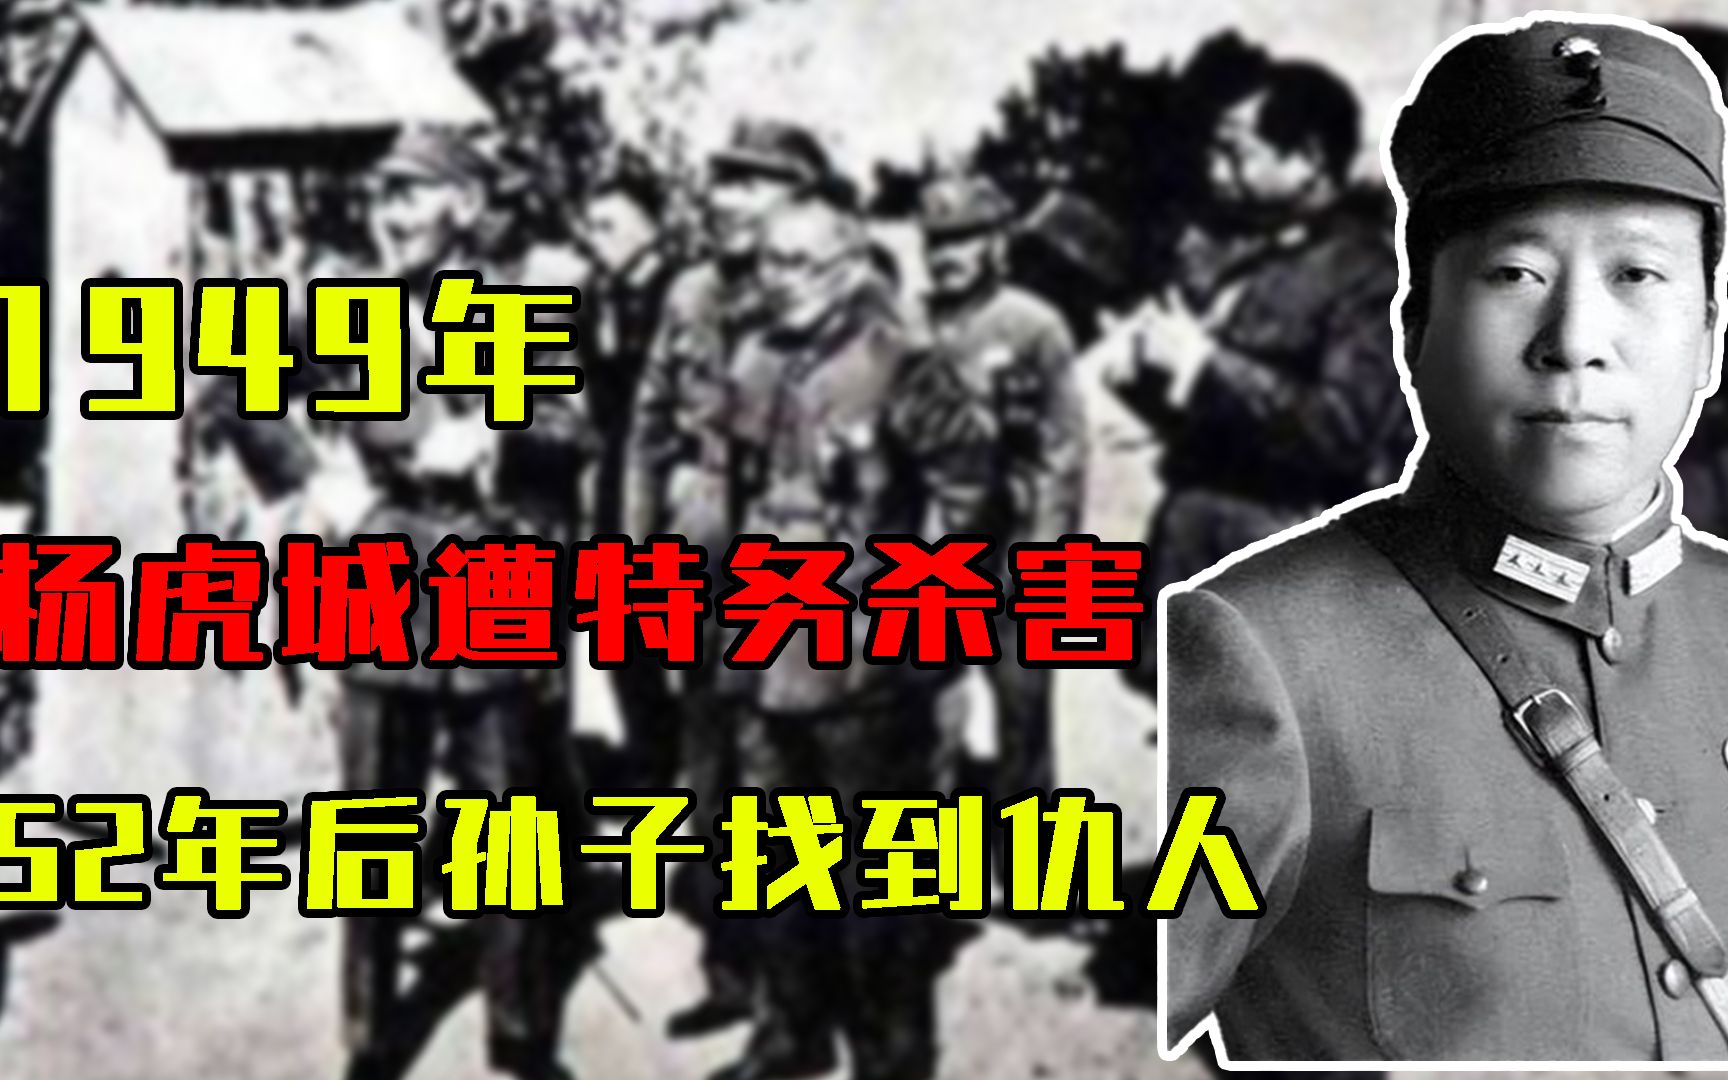 1949年，杨虎城遭特务杀害，52年后孙子找到仇人：祝您长命百岁